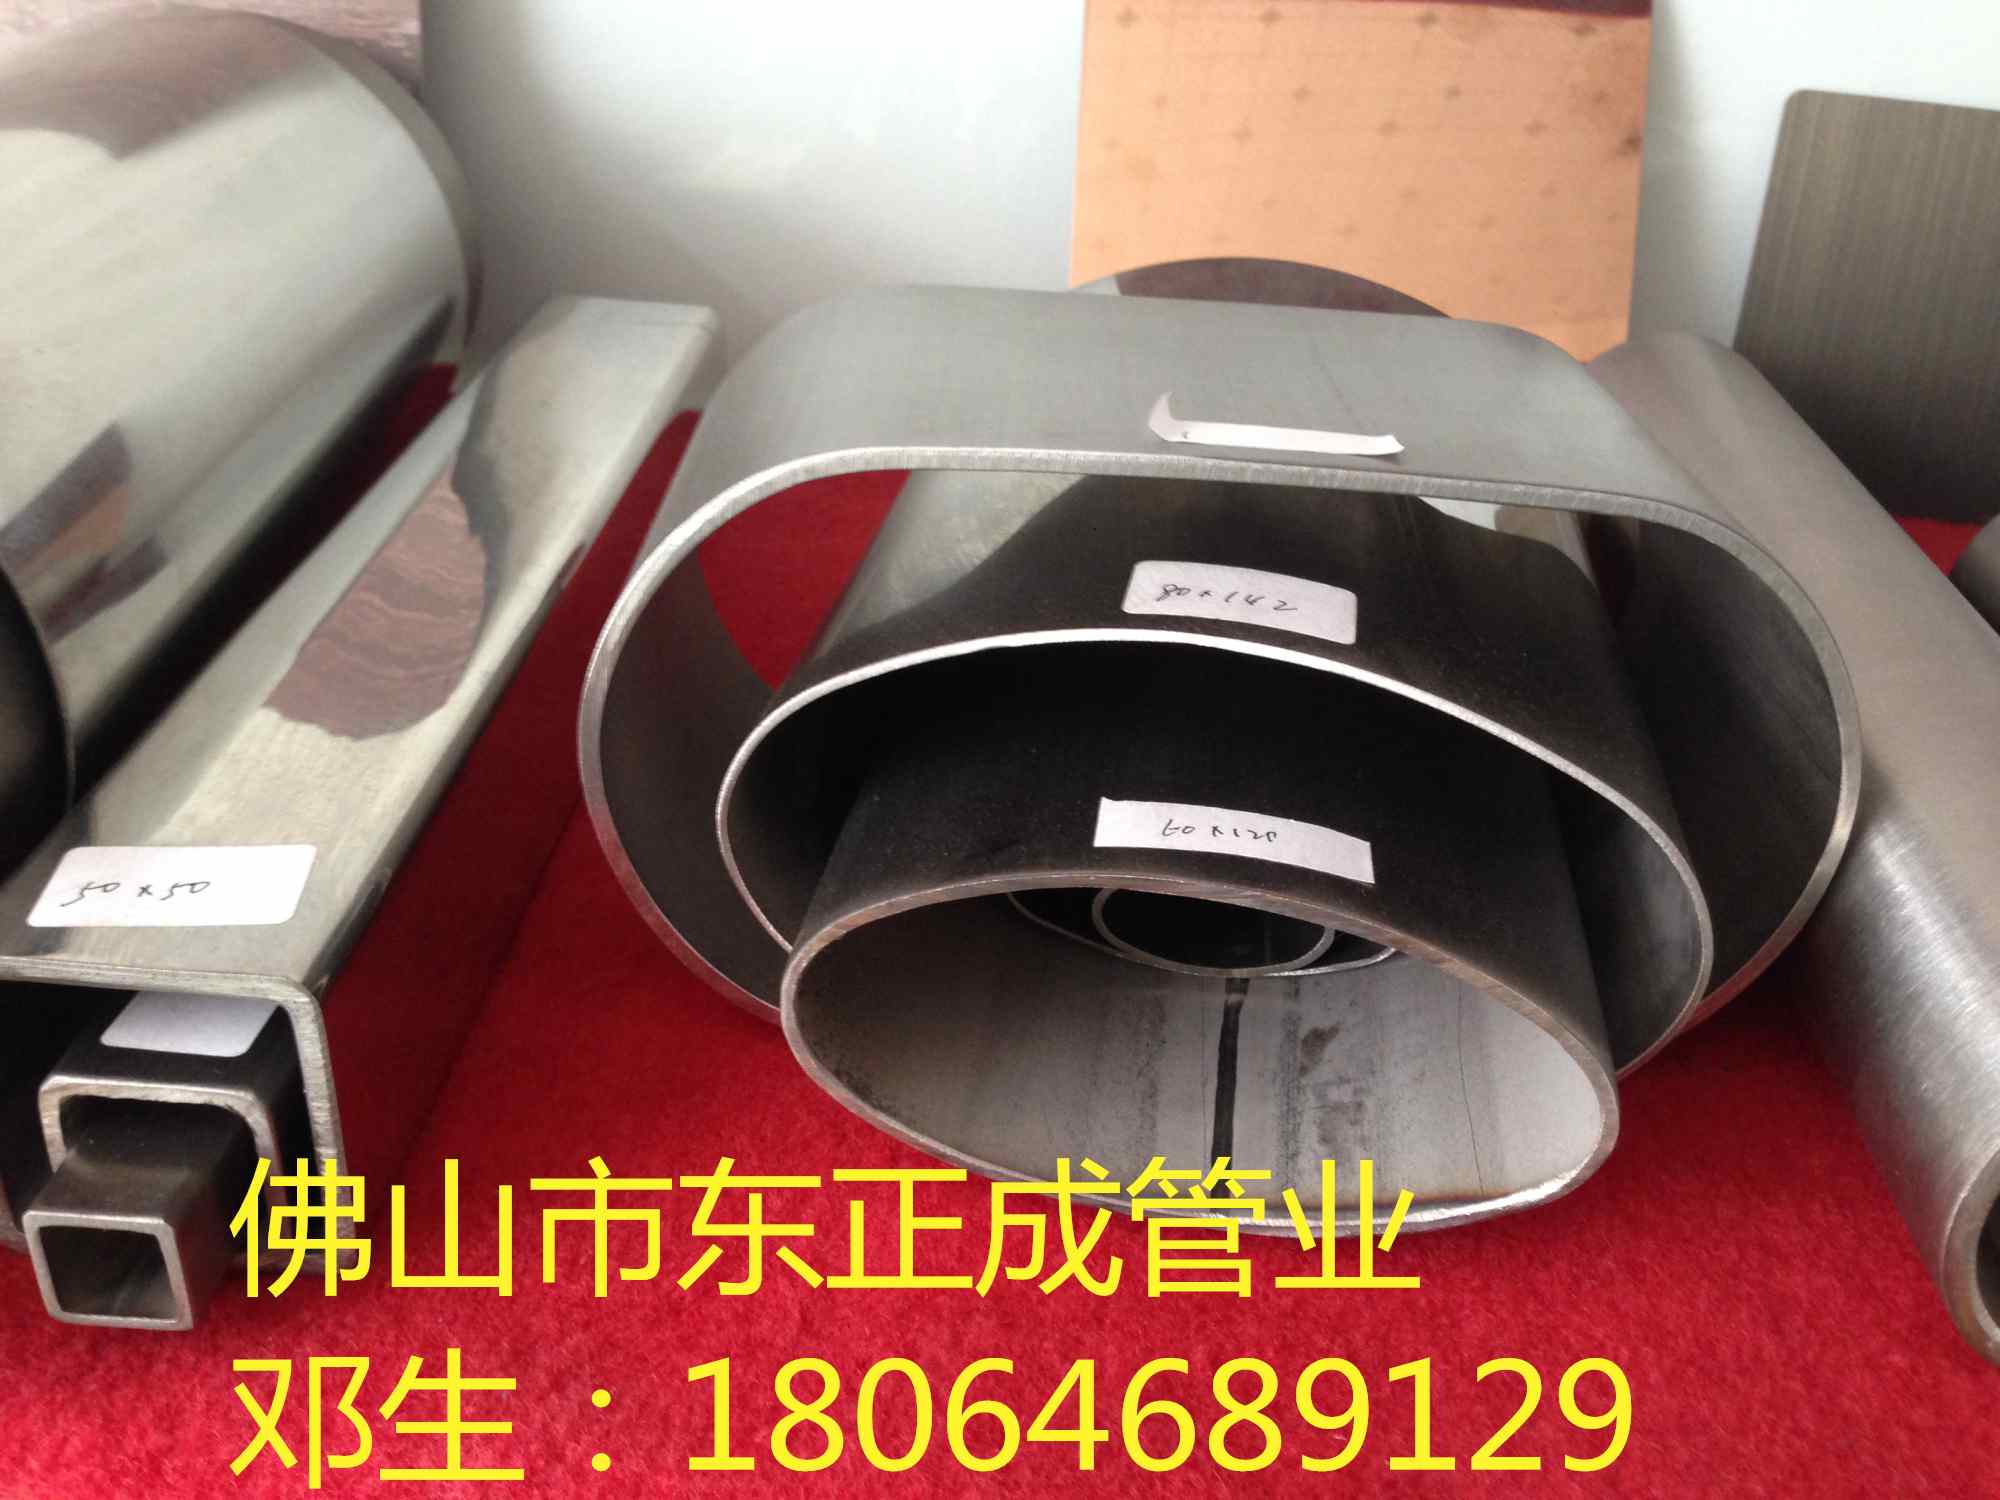 惠州不锈钢异型管厂家专业生产 扇形管 平椭管 椭圆管